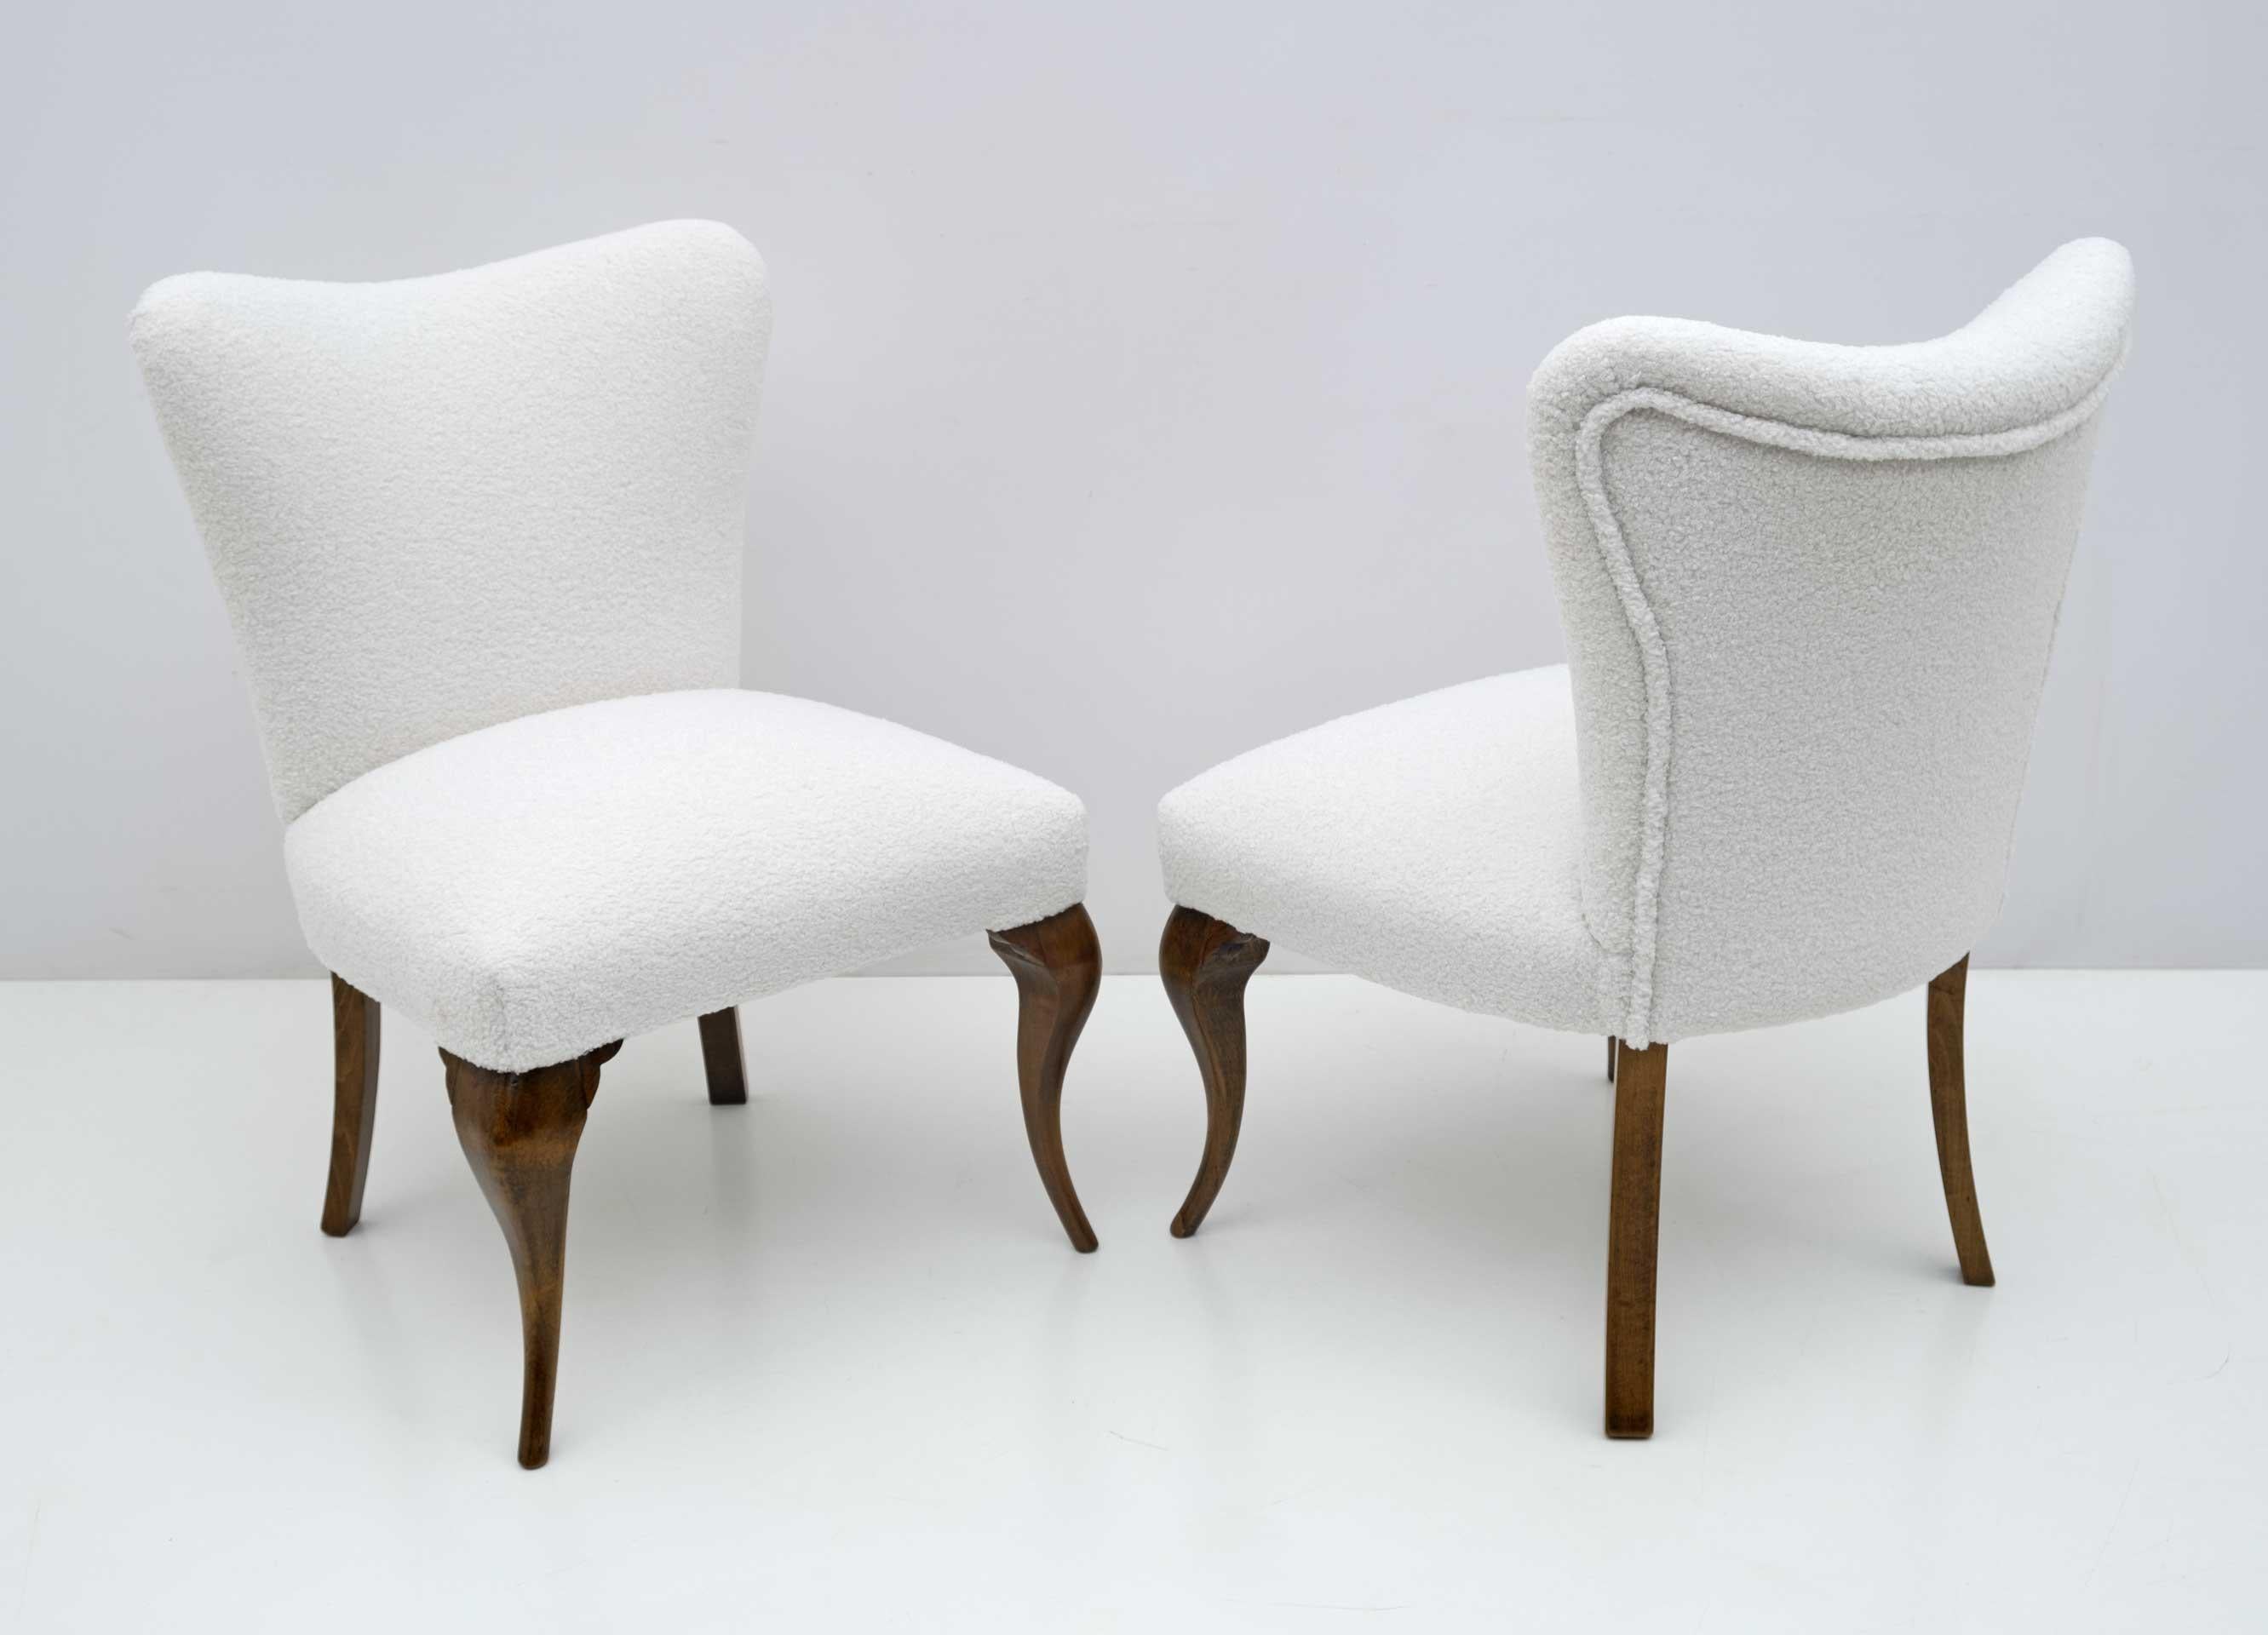 Zwei Sessel im Chippendale-Stil, italienische Produktion aus den 1940er Jahren, komplett restauriert und mit Boucle-Stoff bezogen. Sie passen sehr gut in ein Schlafzimmer oder ein Wohnzimmer.